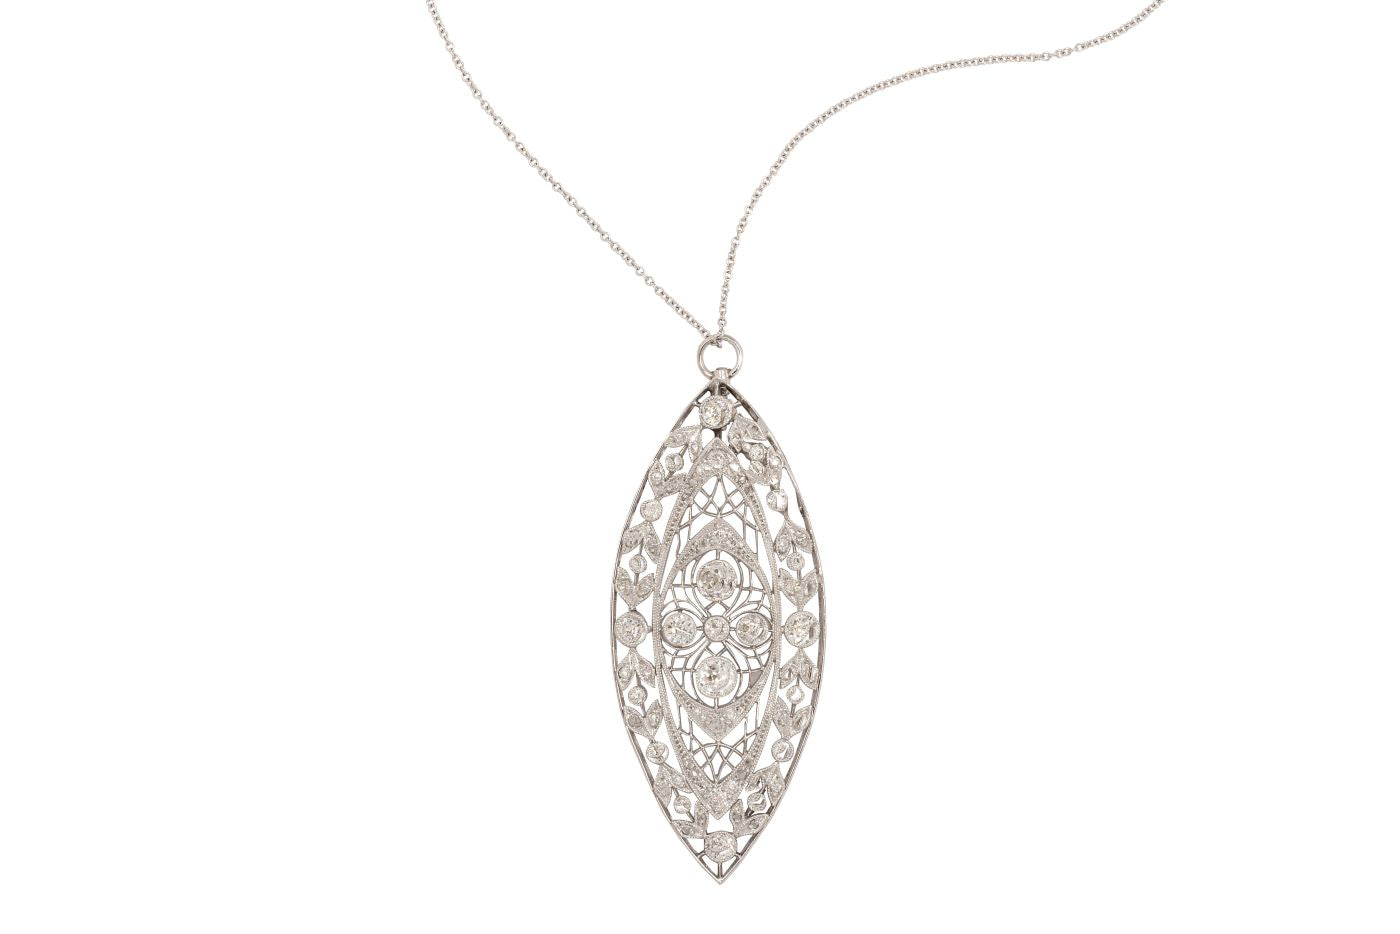 Antique Lace Diamond Necklace